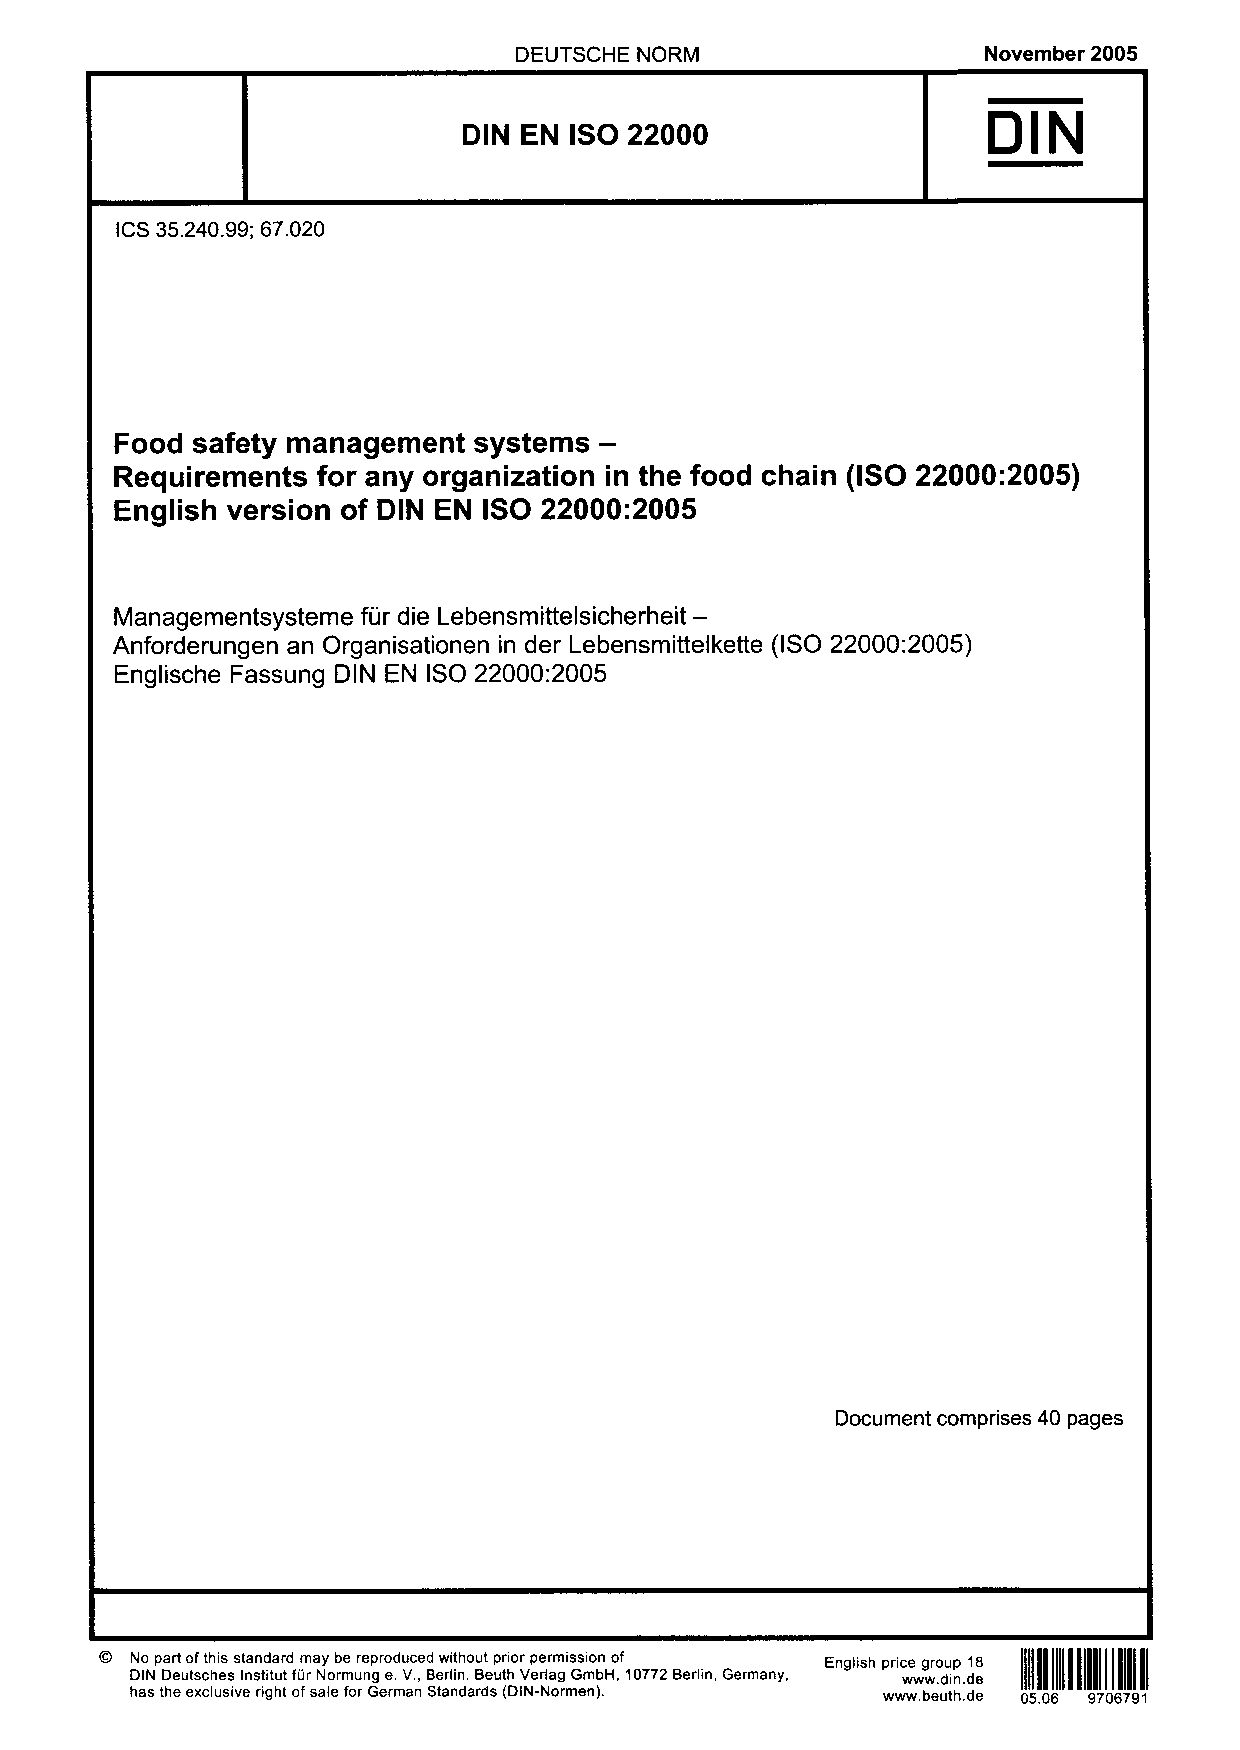 DIN EN ISO 22000-2005